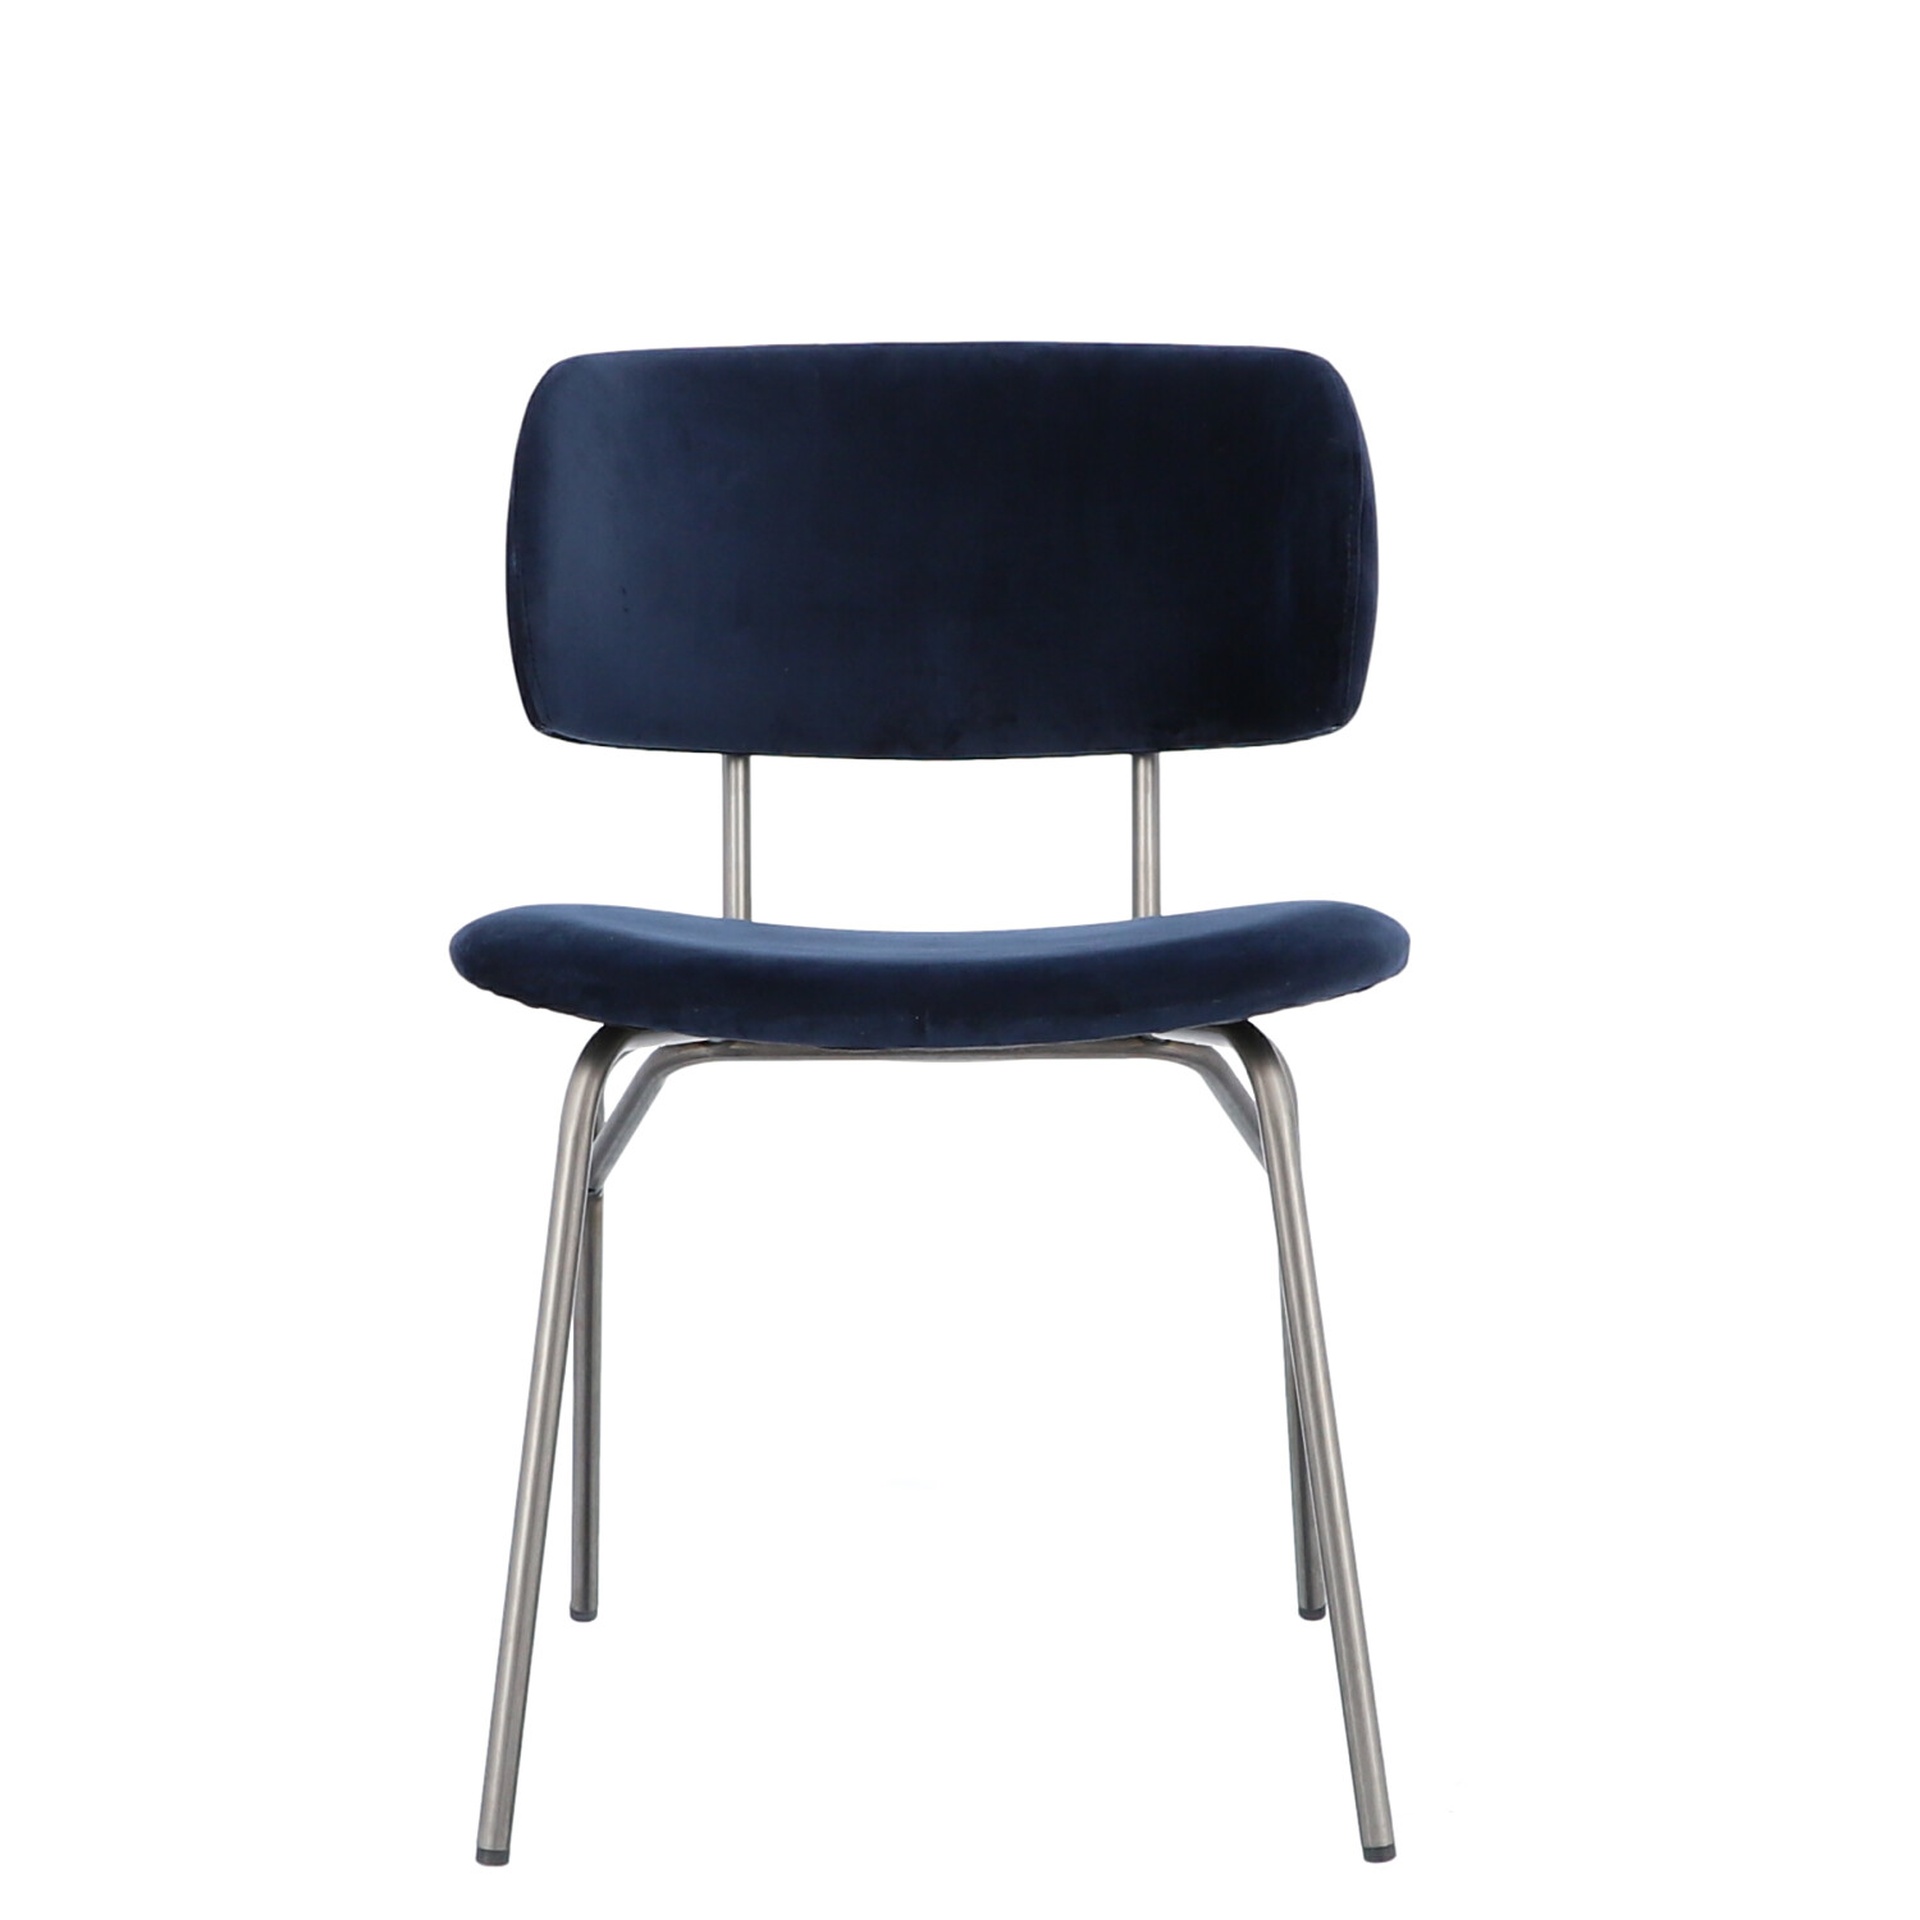 Der moderne Stuhl Giulia wurde aus einem Metall Gestell gefertigt. Die Sitz- und Rückenfläche ist aus einem Samt Bezug. Der Stuhl hat eine dunkelblaue Farbe und ist von der Marke Jan Kurtz.